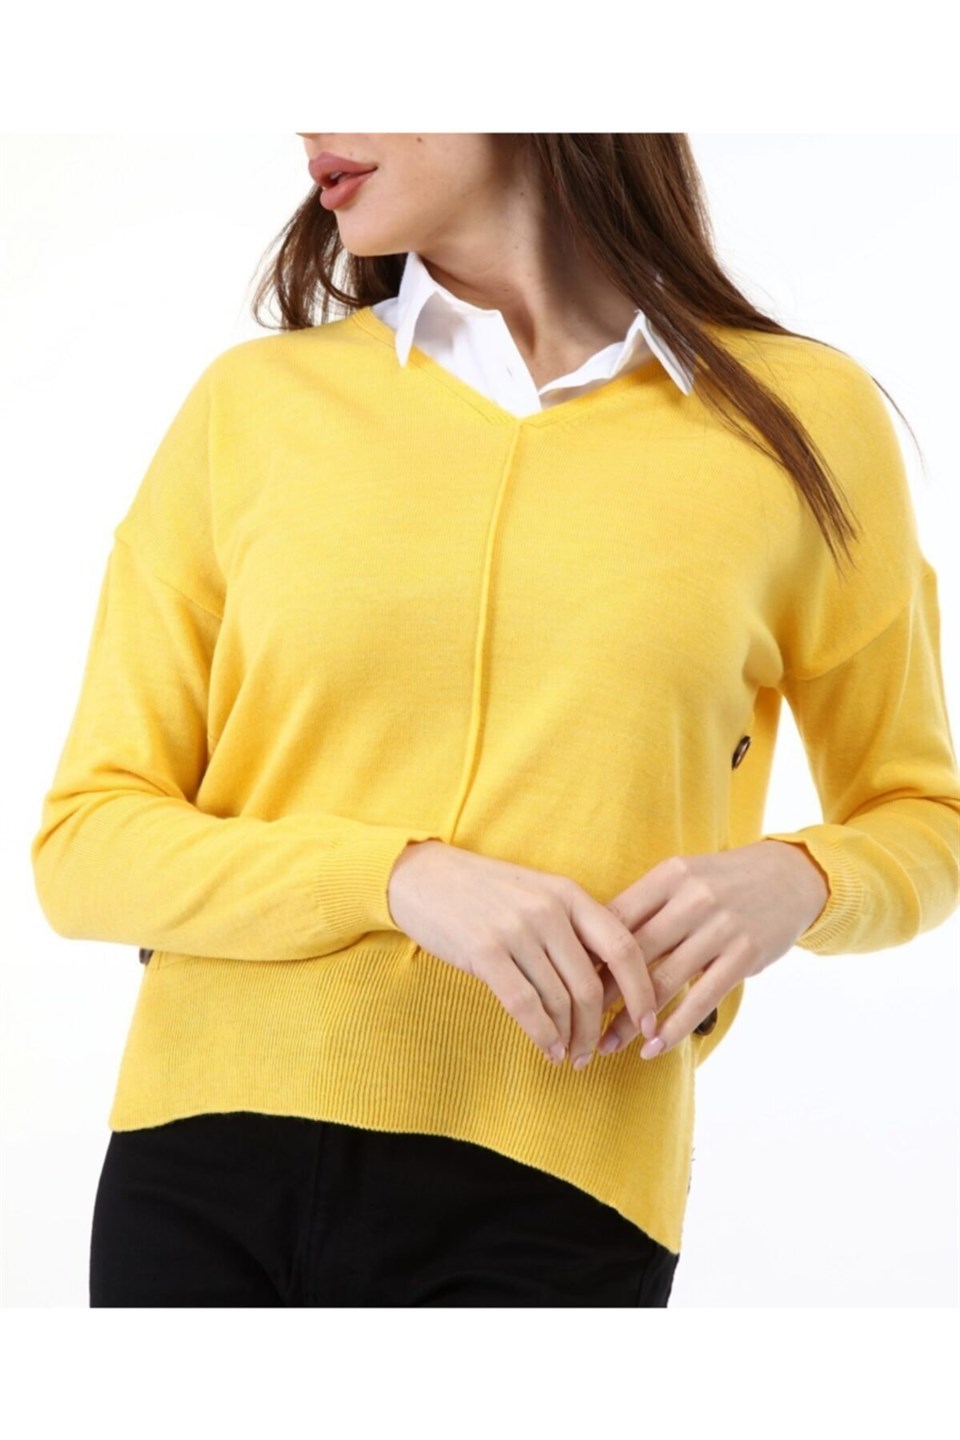 Kadın Yandan Düğmeli Gömlek Yaka Sarı Kazak | aqefashion.com